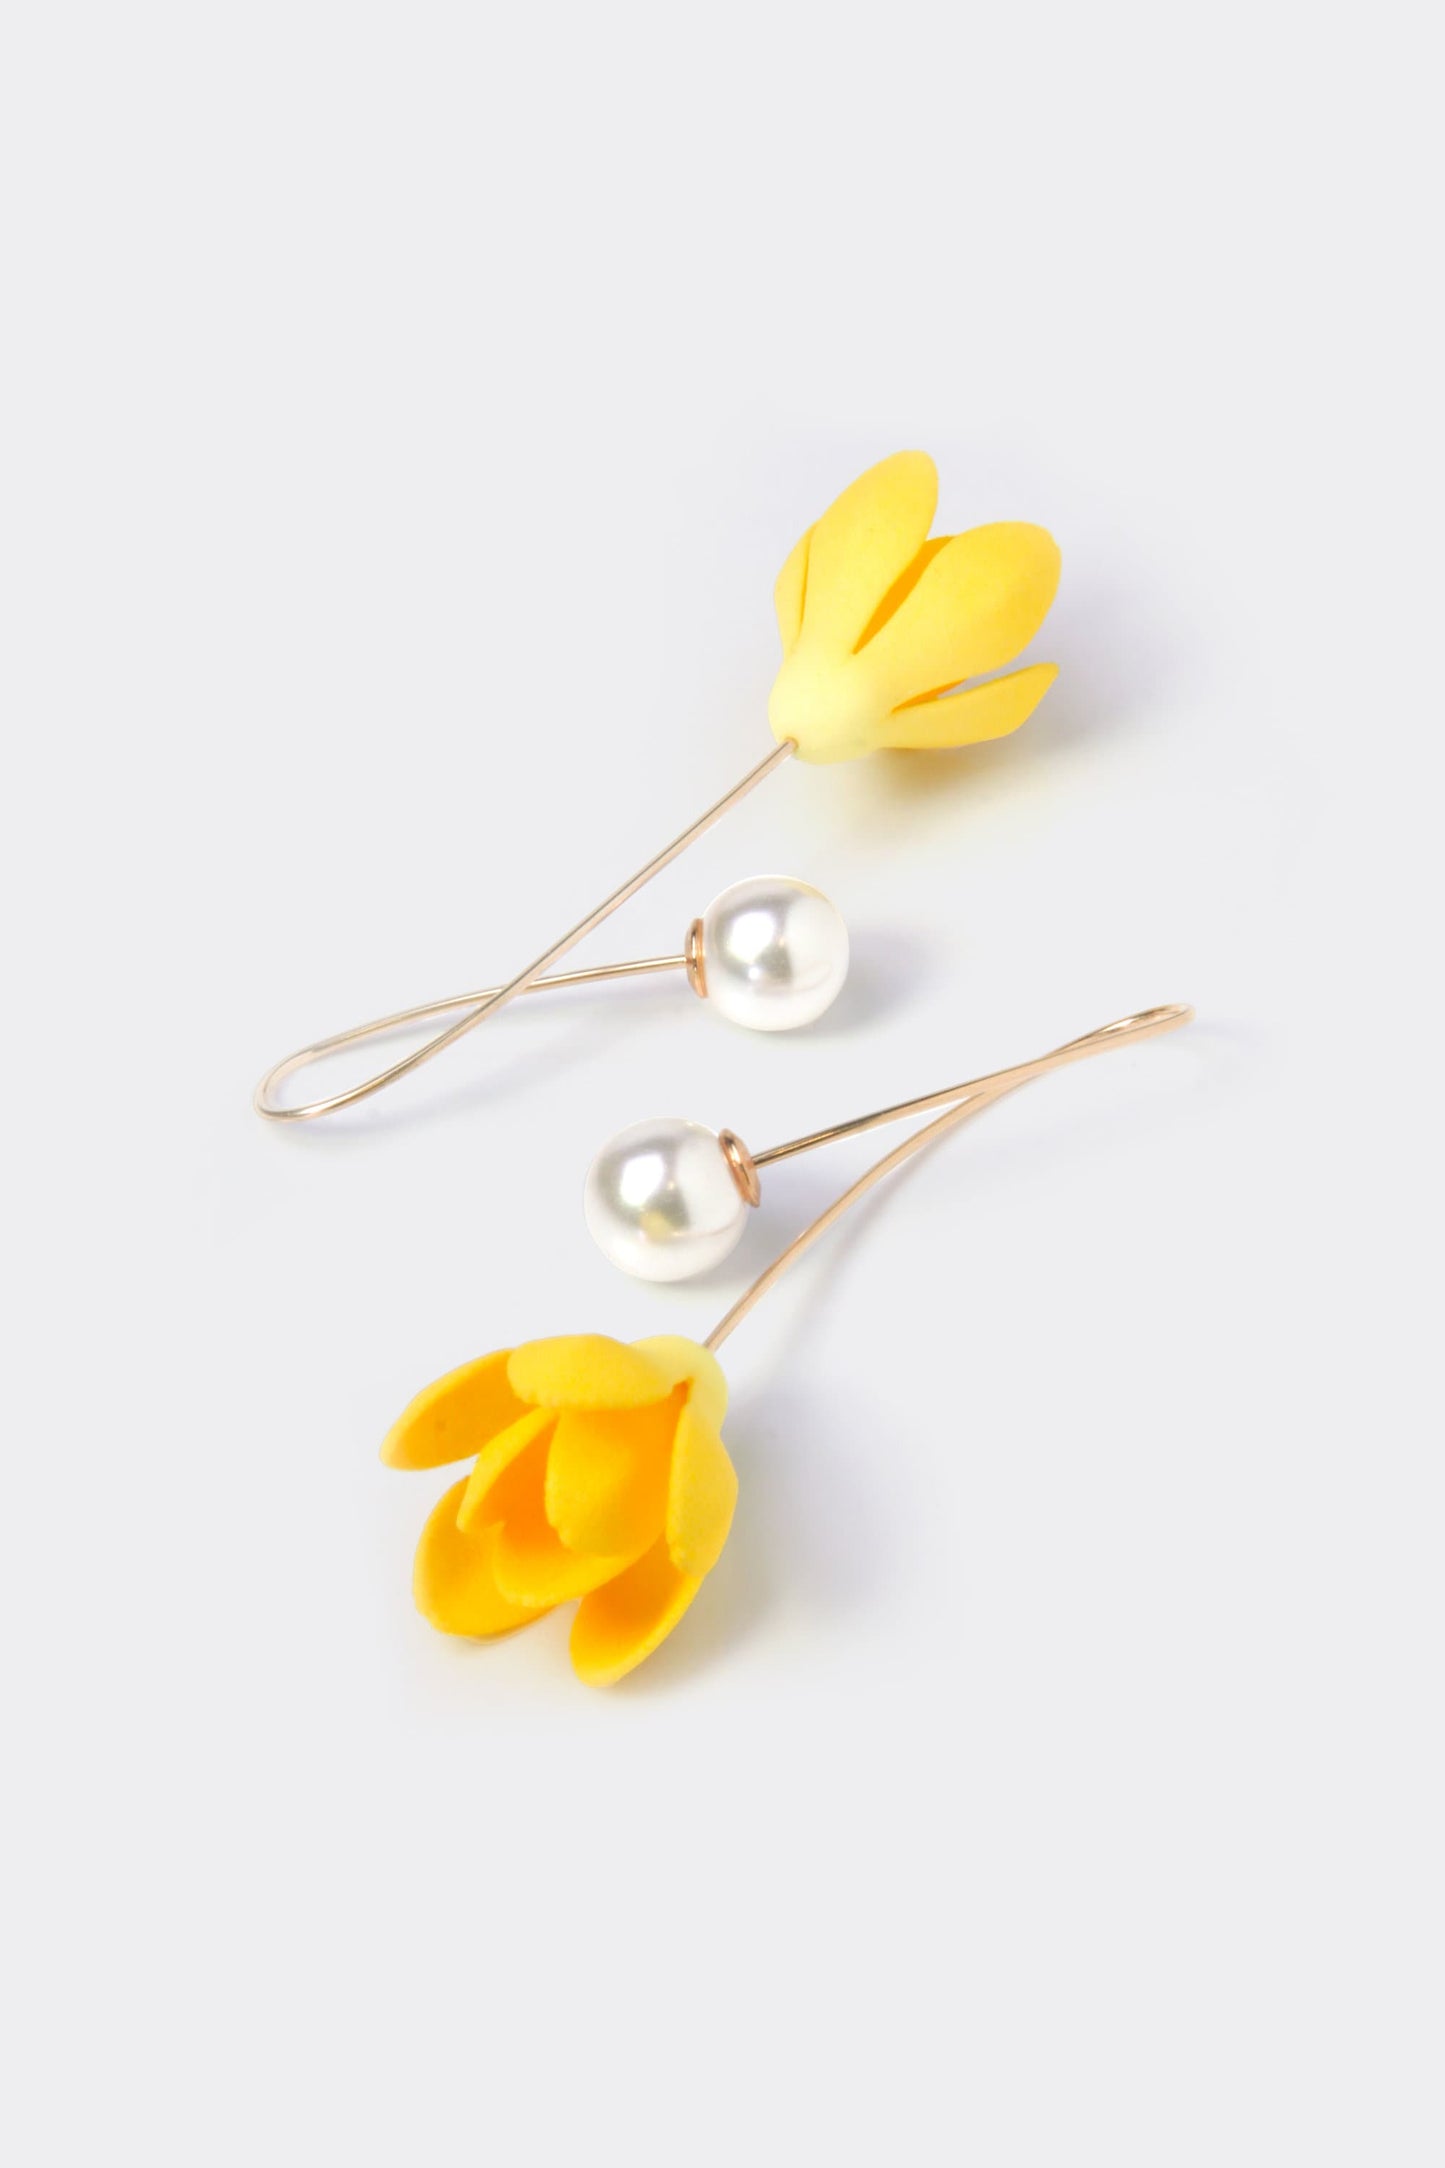 Flower Dangle Earring | 3D Printed Jewelry | 14k Gold Filled Earring | Light Weight Earring | Gift For Her | Magnolia Flower Earring